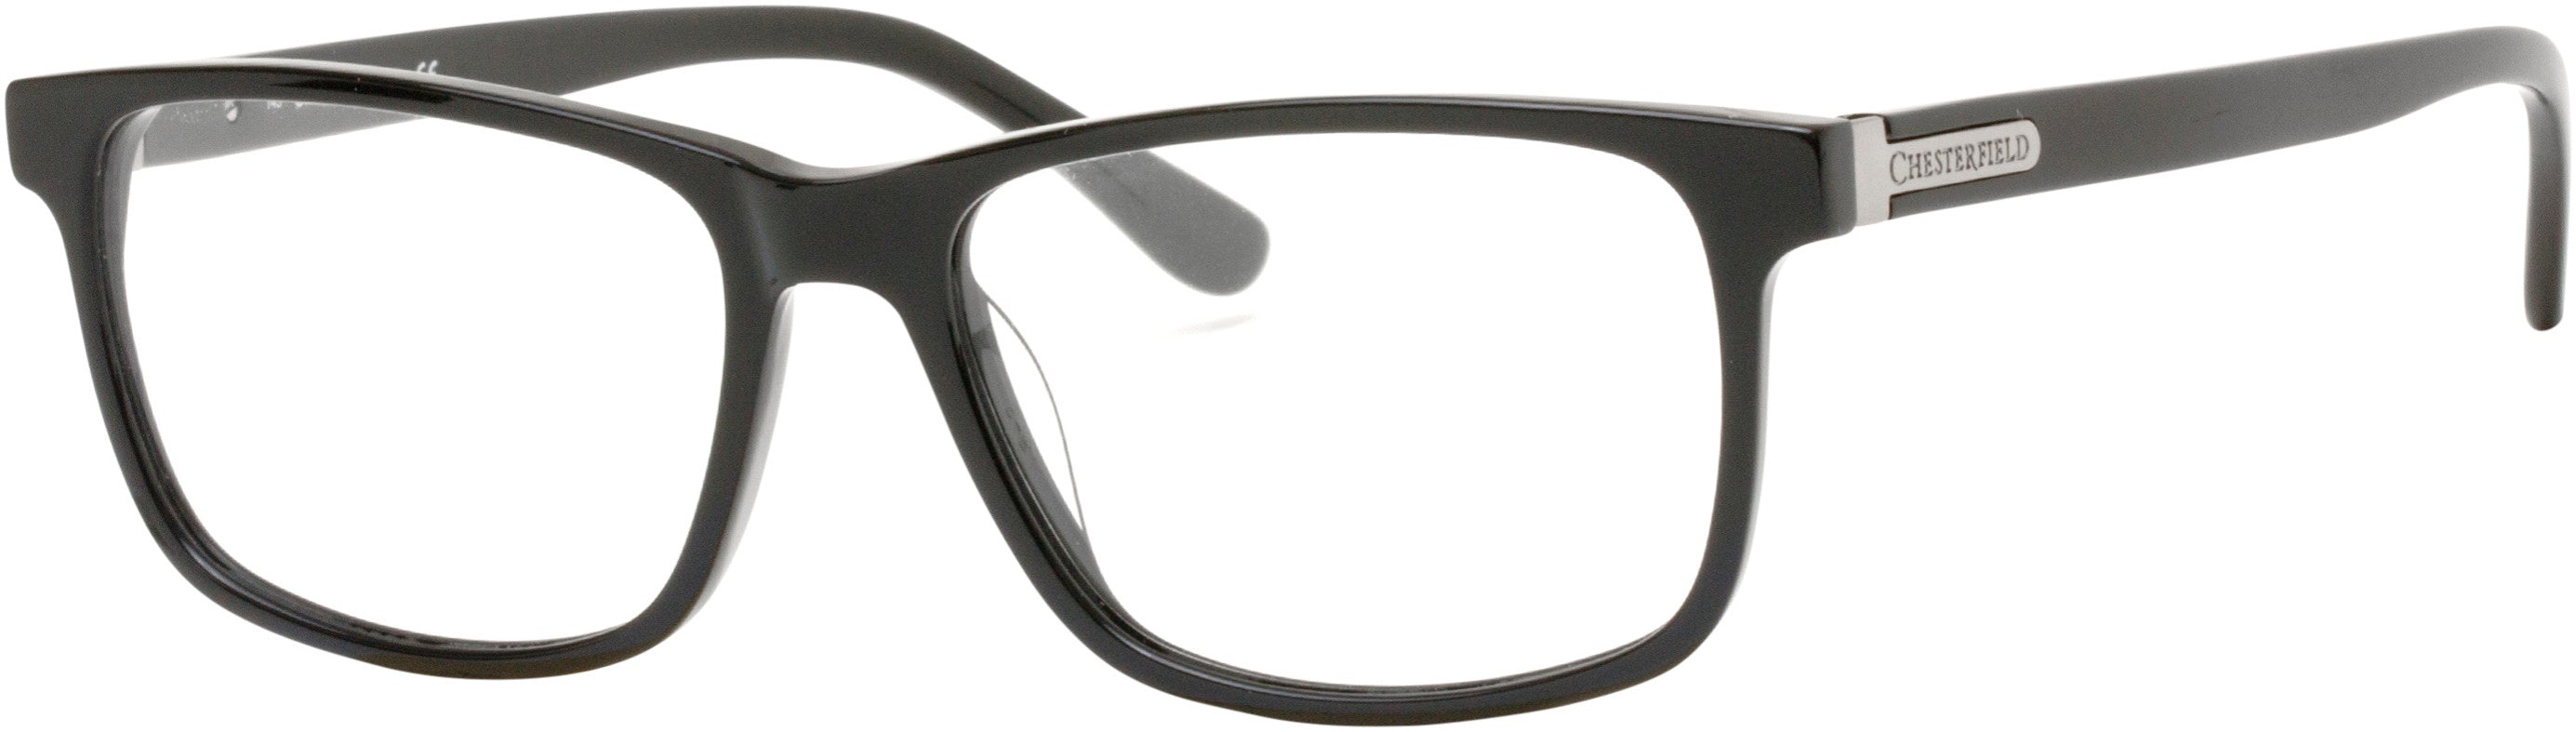  Chesterfield 60XL Rectangular Eyeglasses 0807-0807  Black (00 Demo Lens)